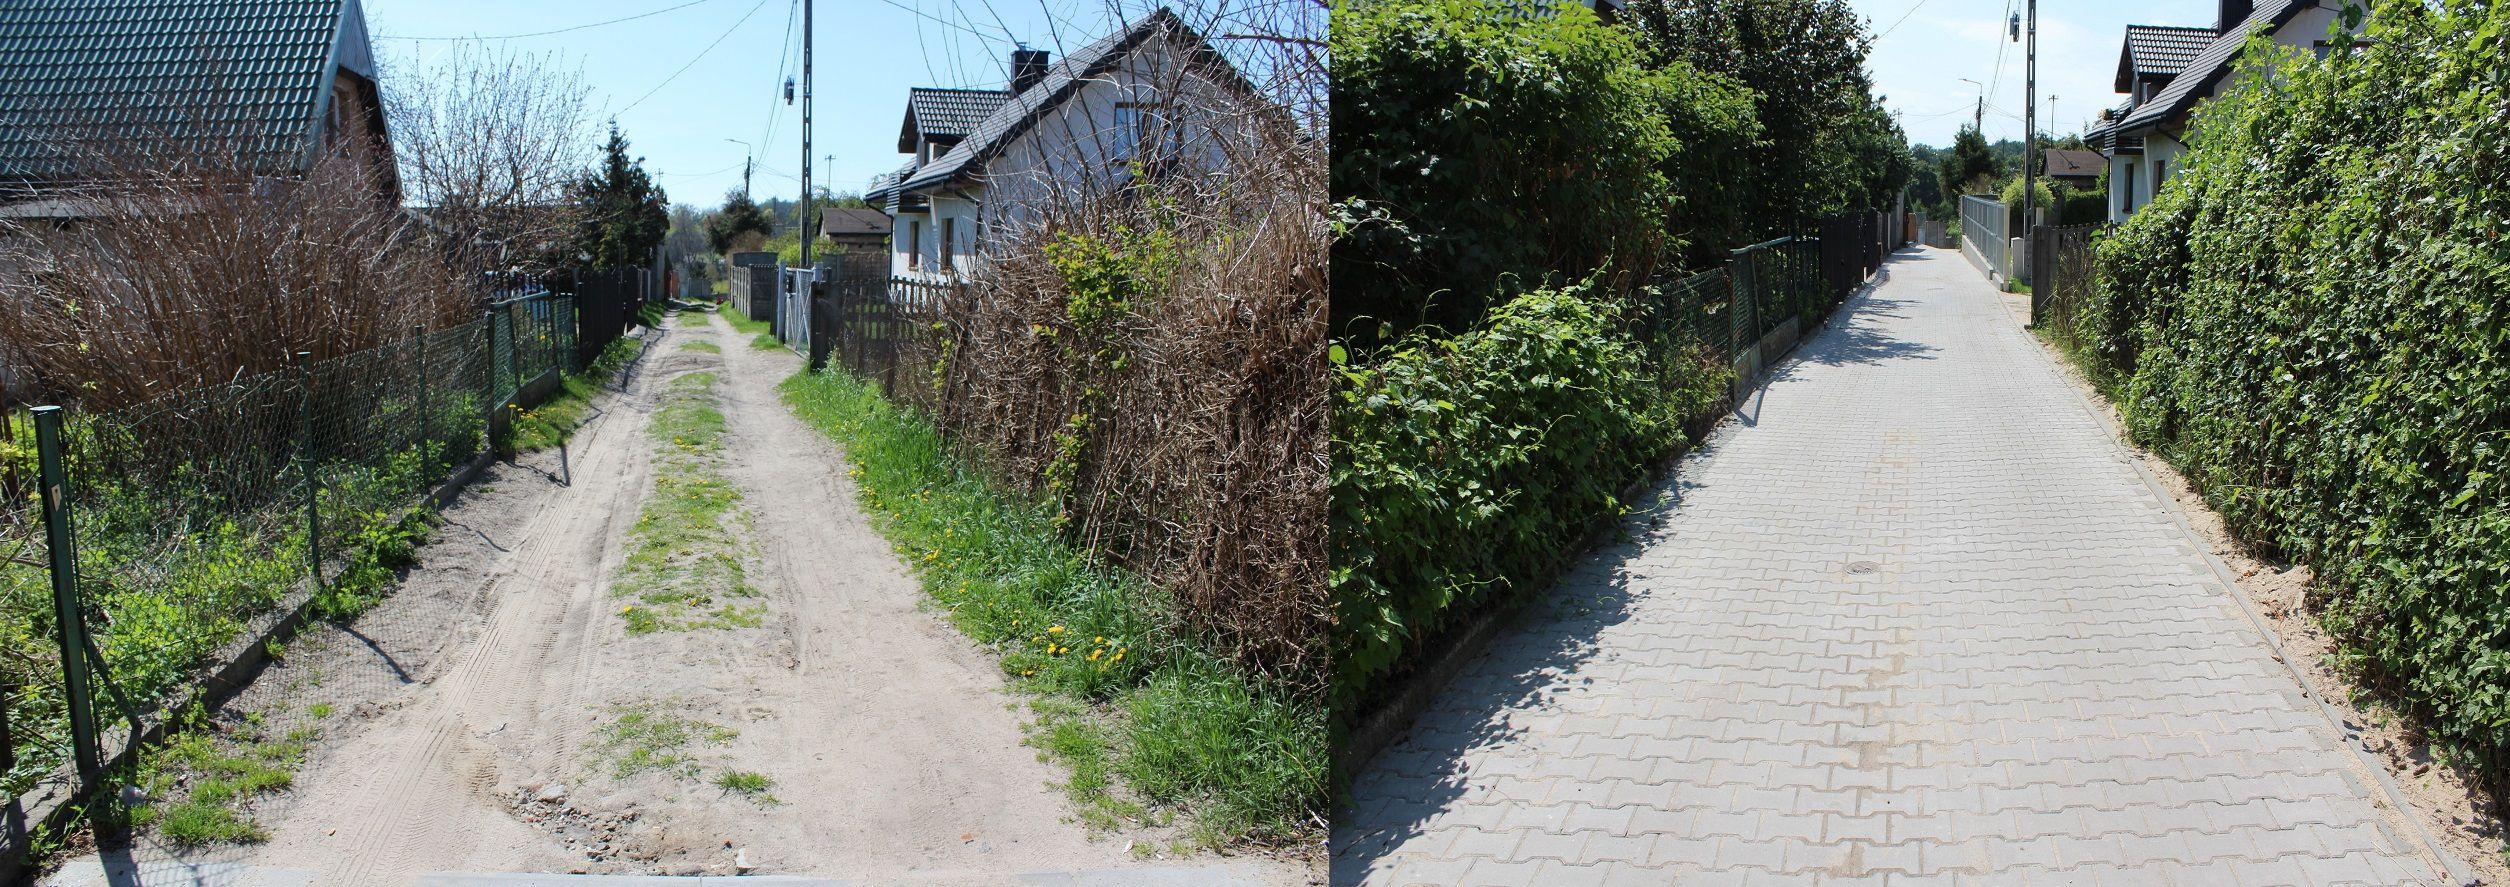 ul. Wapienna Góra w Lipnie - stan przed i po remoncie